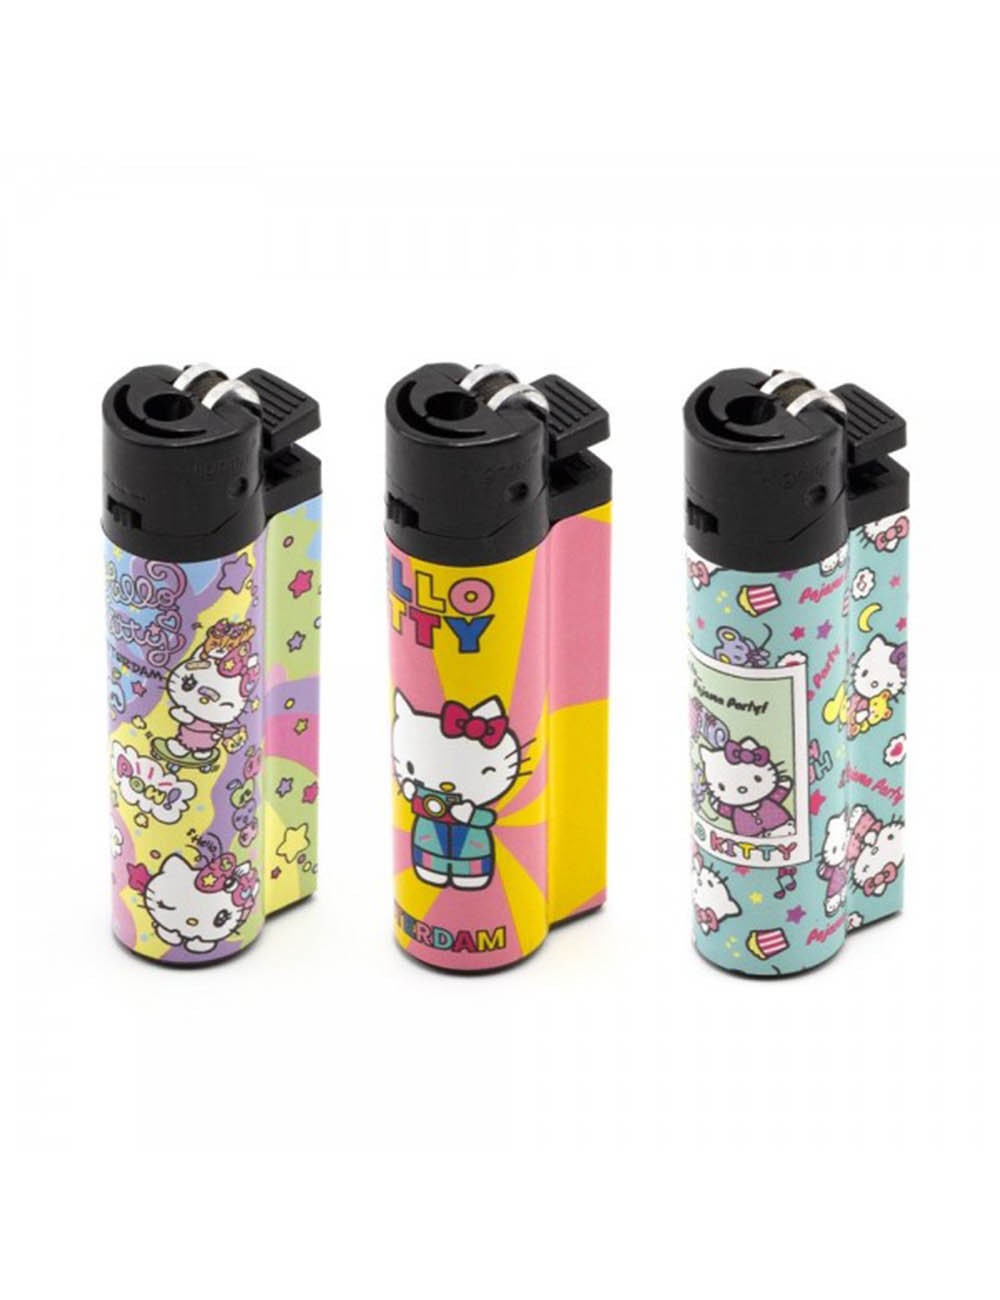 Achetez des Briquets Hello Kitty Fun aux Designs Spectaculaires chez  Pevgrow.